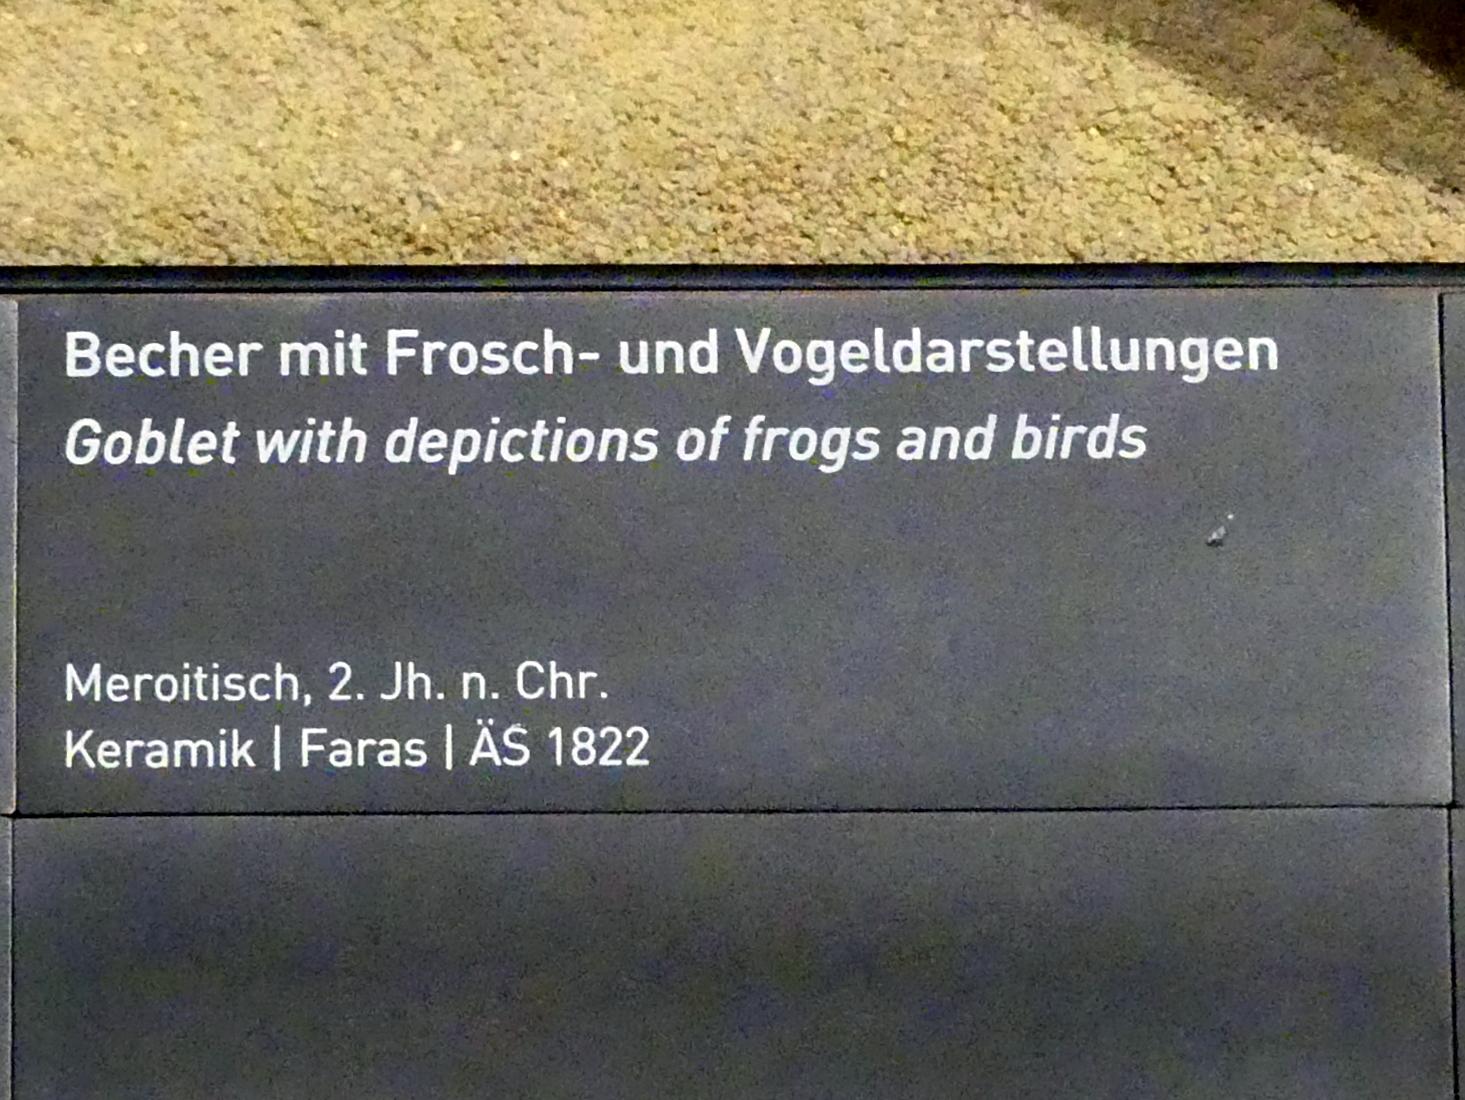 Becher mit Frosch- und Vogeldarstellungen, Meroitische Zeit, 200 v. Chr. - 500 n. Chr., 100 - 200, Bild 2/2